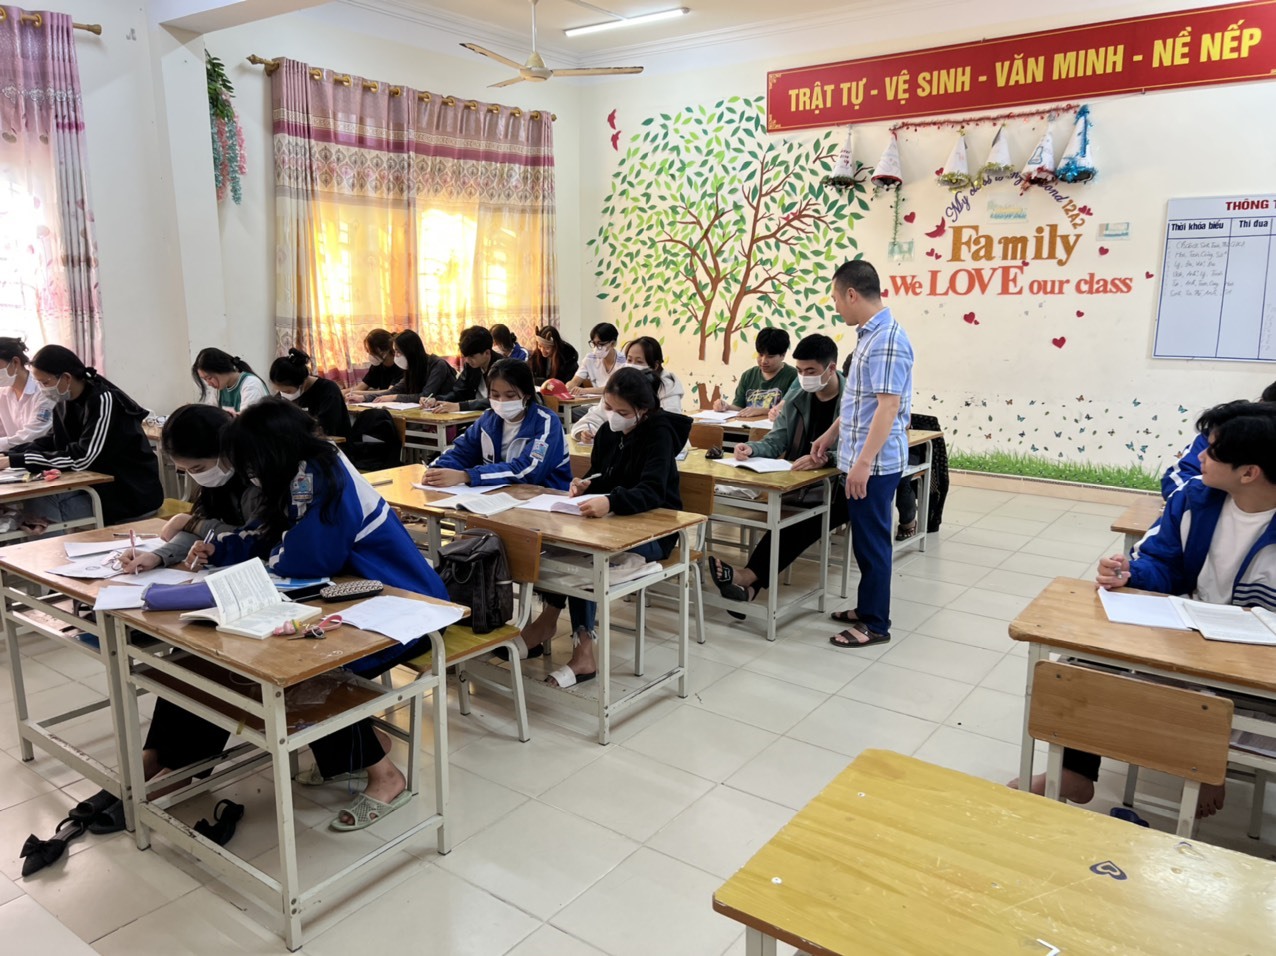 Thầy Nguyễn Thiện cùng học sinh ôn thi Tốt nghiệp THPT. Ảnh: Nhân vật cung cấp